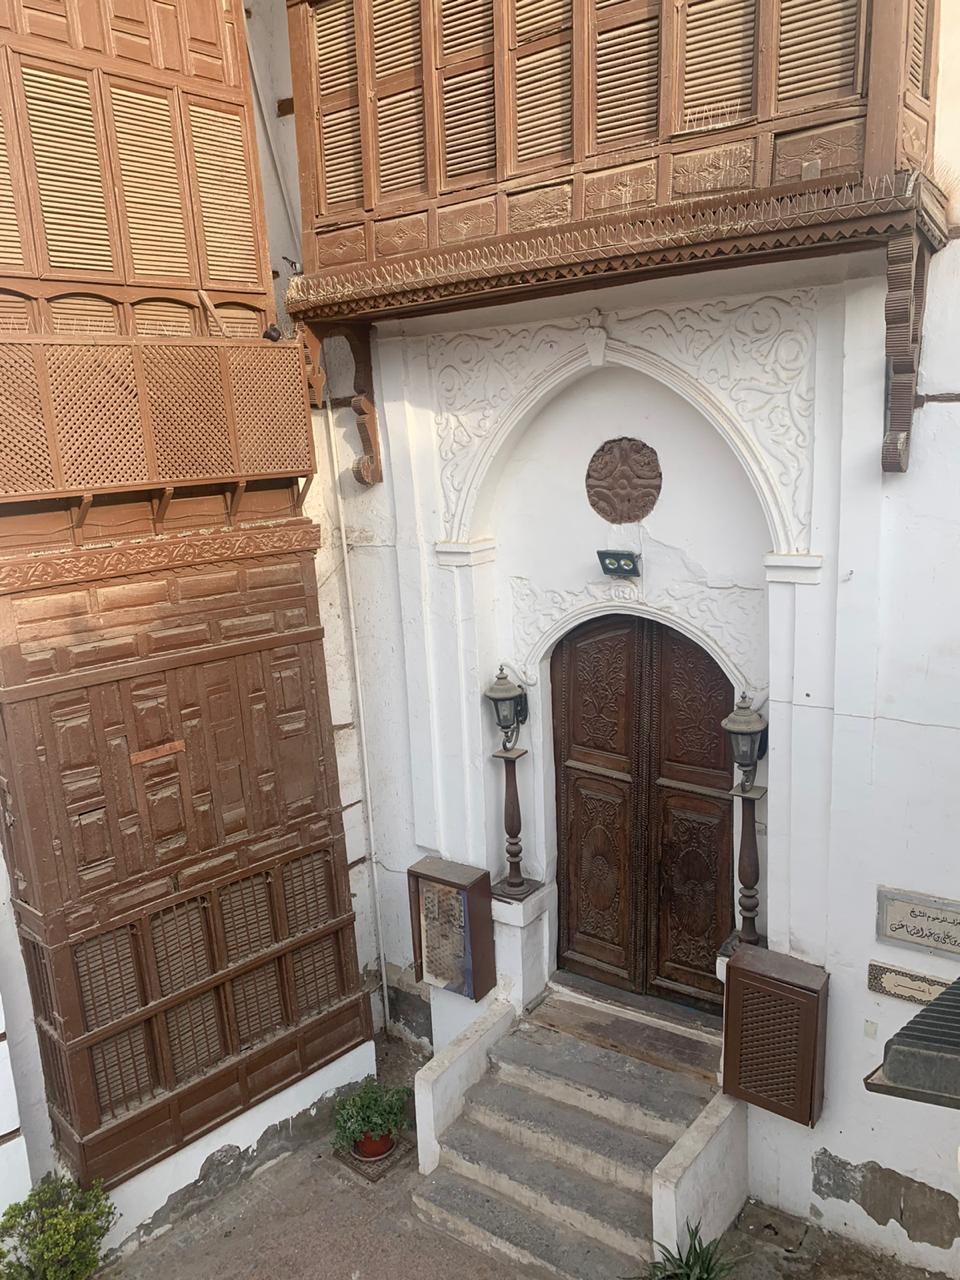 أشهر بيوت جدة التاريخية التي حفظت ماضيها العريق